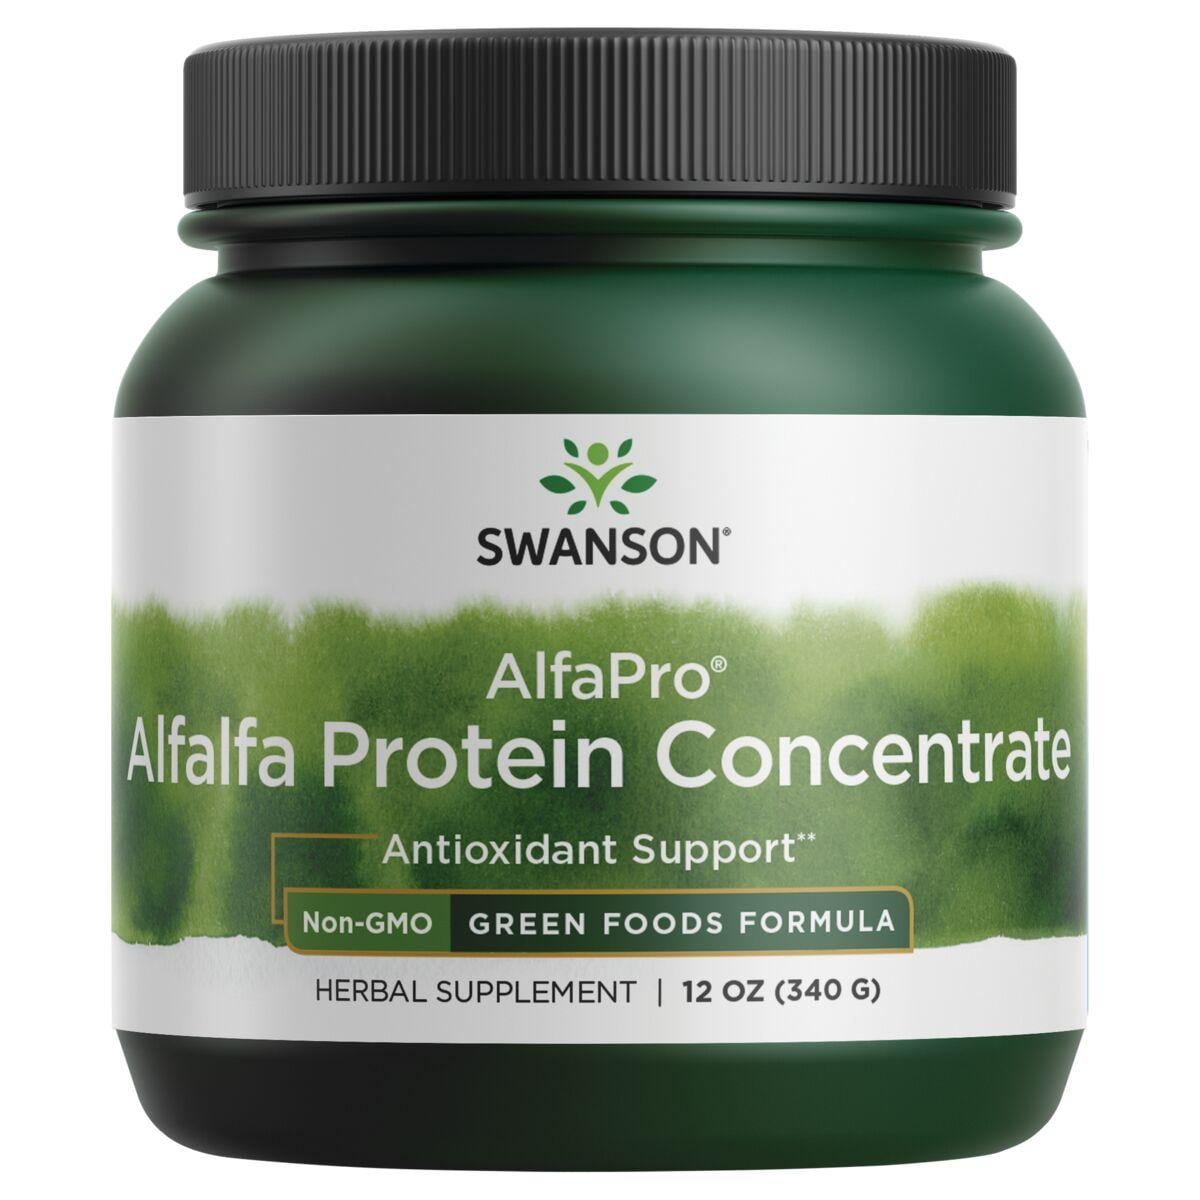 Swanson GreenFoods Formulas Alfapro Alfalfa Protein Concentrate - Non-Gmo Vitamin | 12 oz Powder